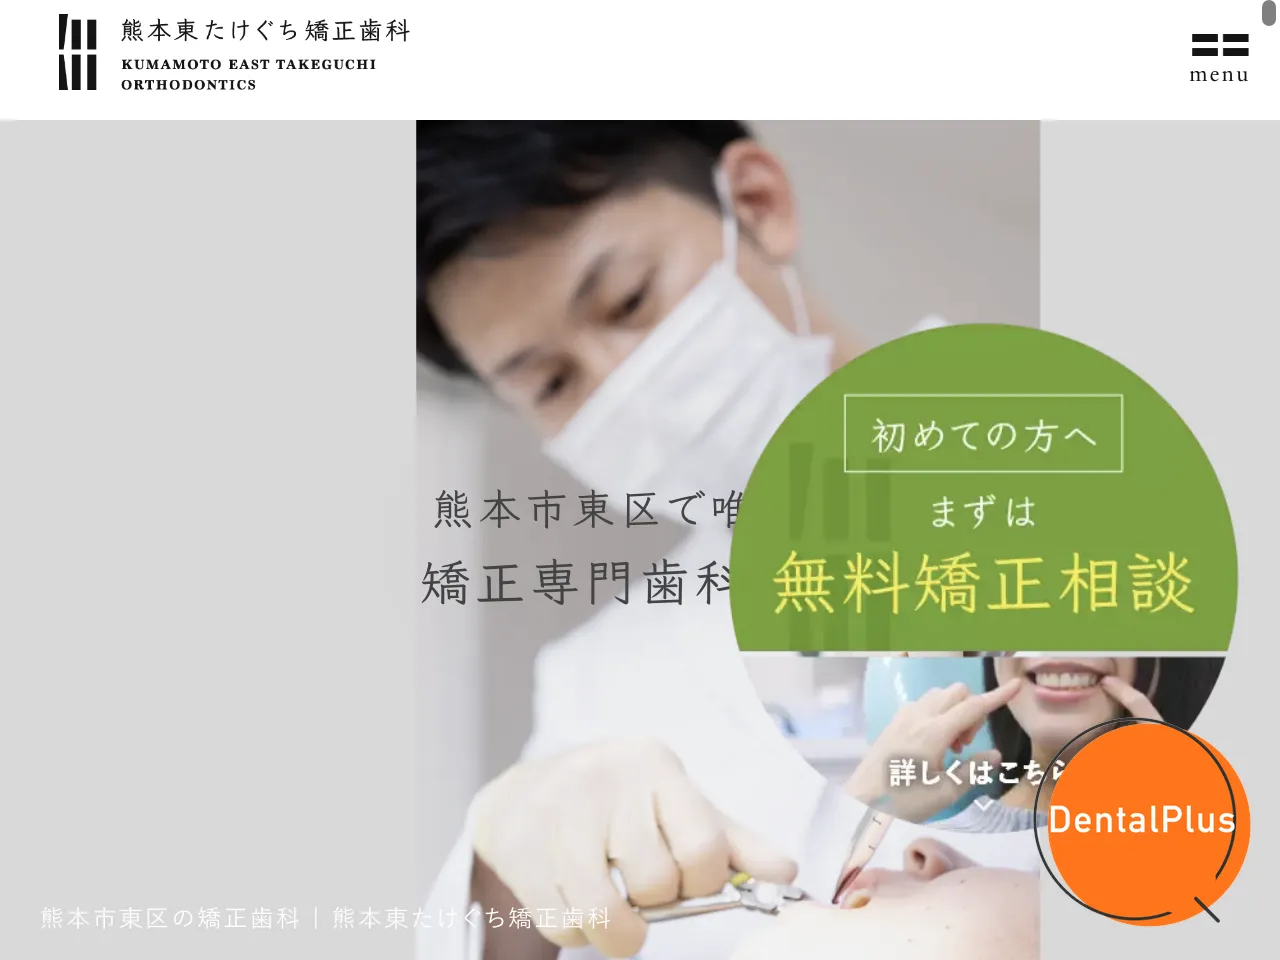 熊本東たけぐち矯正⻭科のウェブサイト